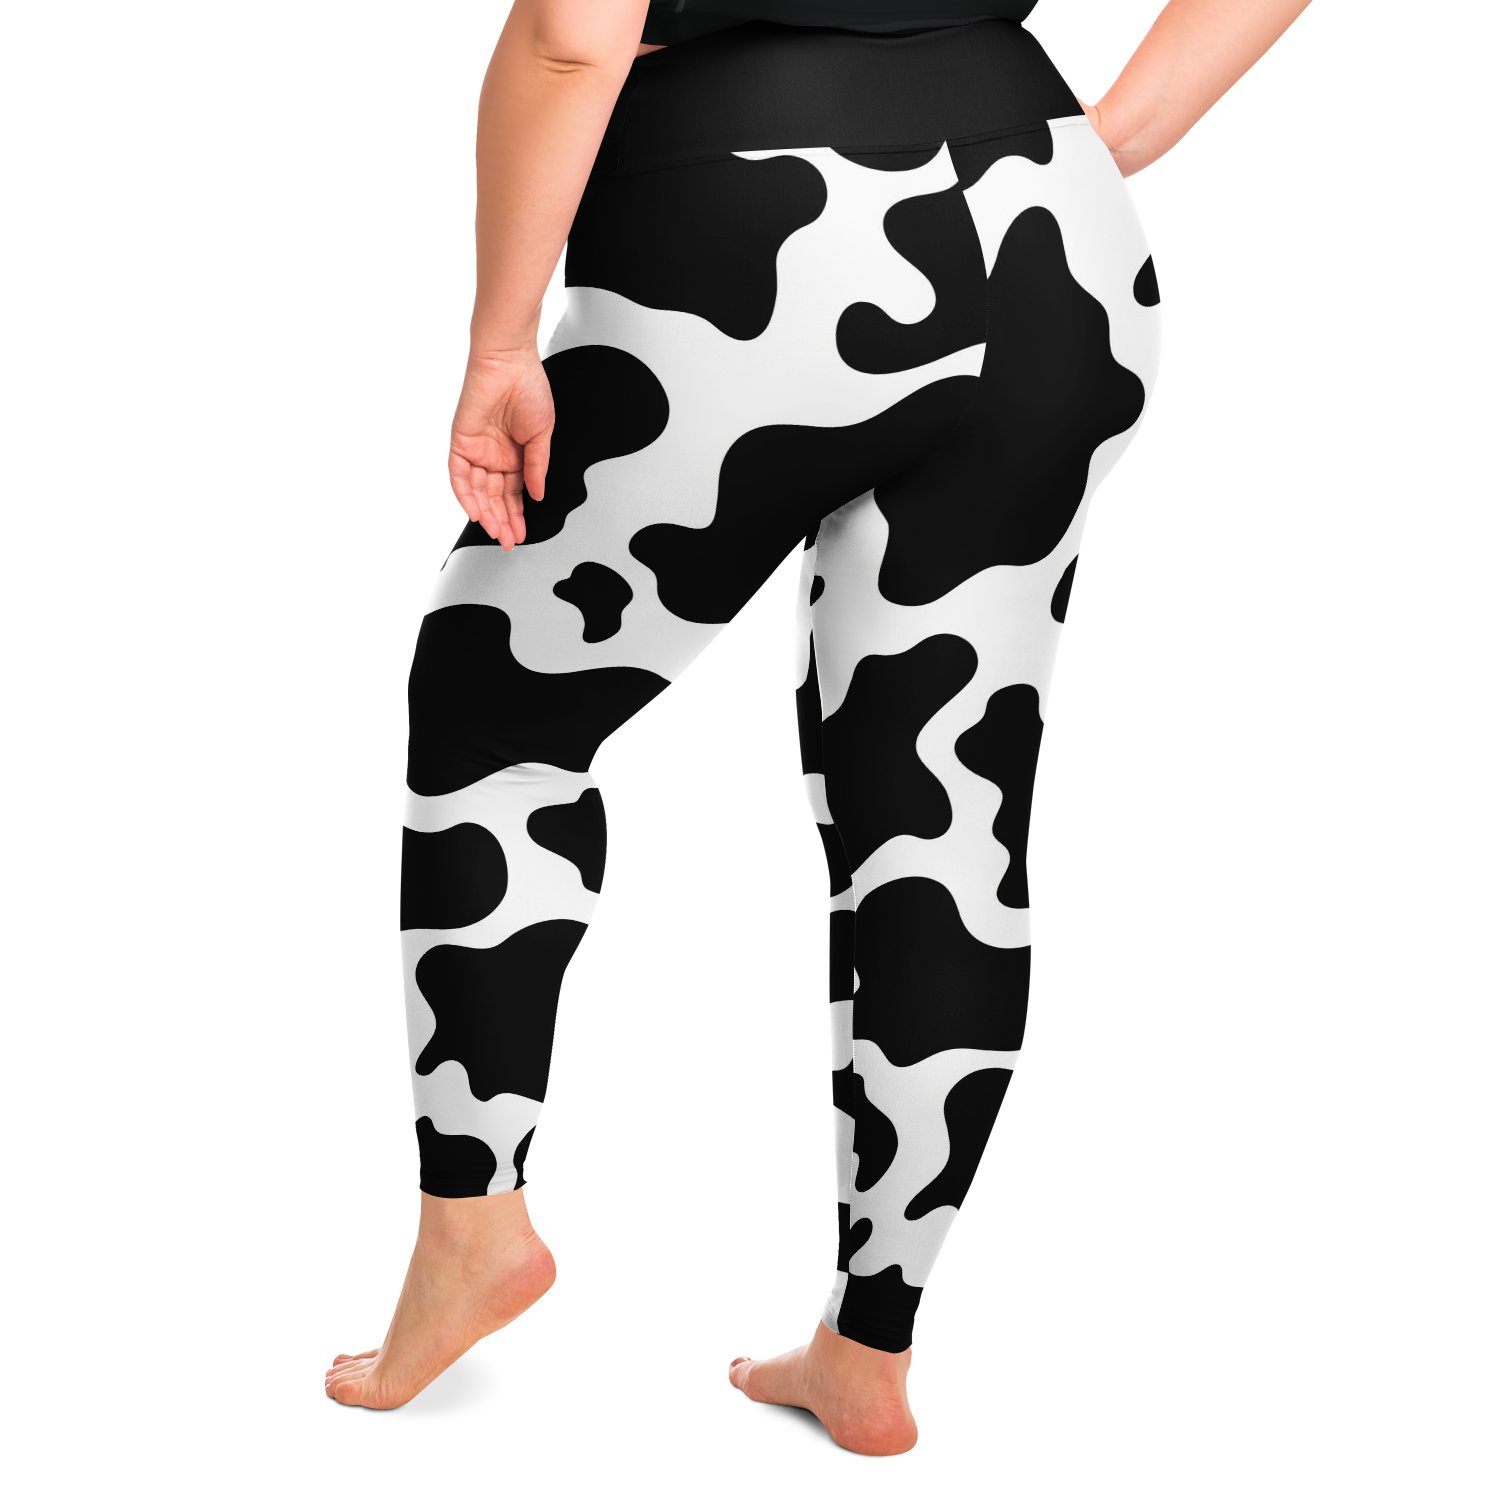 Cow Print Leggings